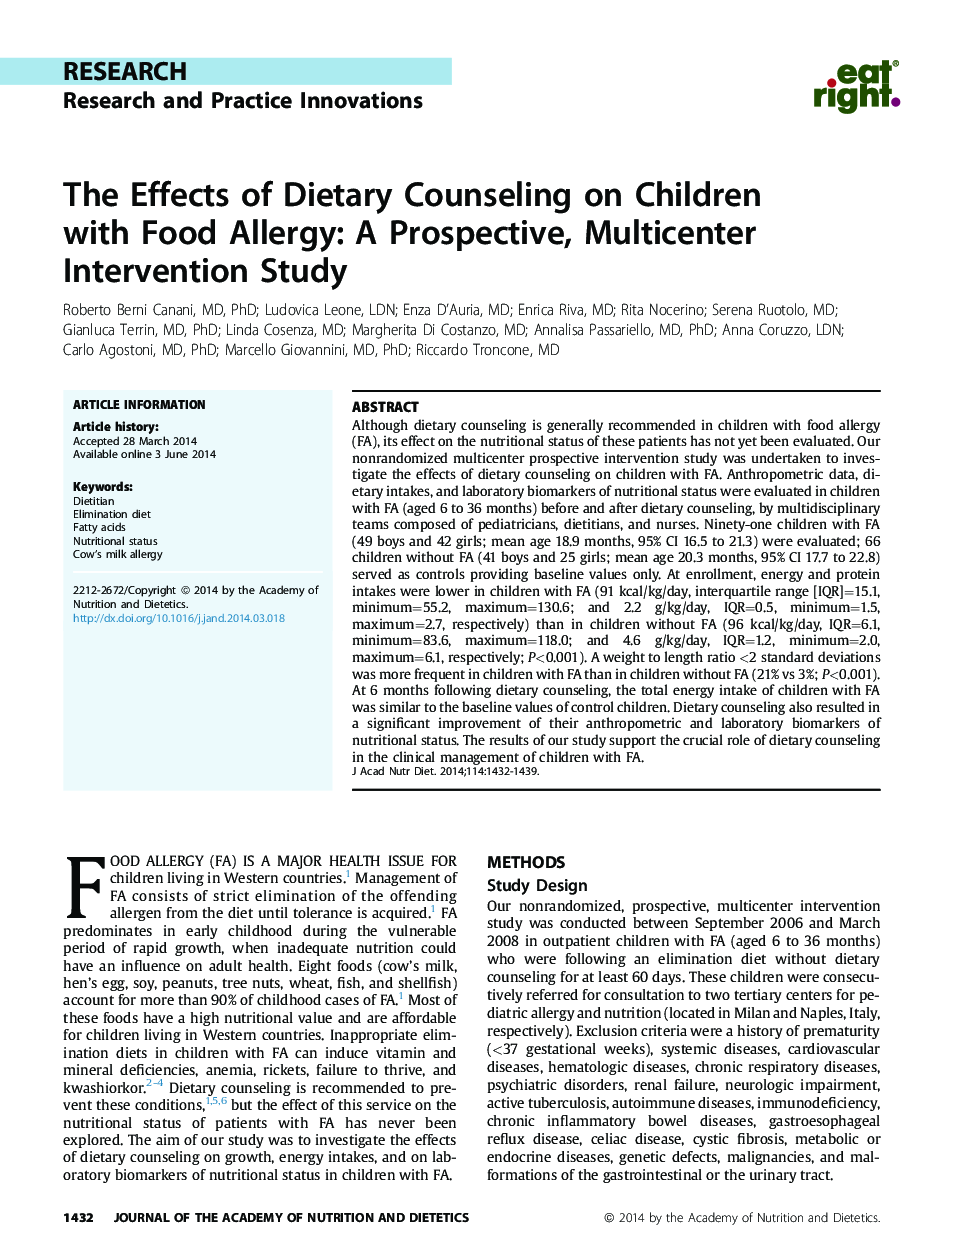 تأثیر مشاوره رژیم غذایی در کودکان با آلرژی غذایی: یک مطالعه مداخله چند بعدی 